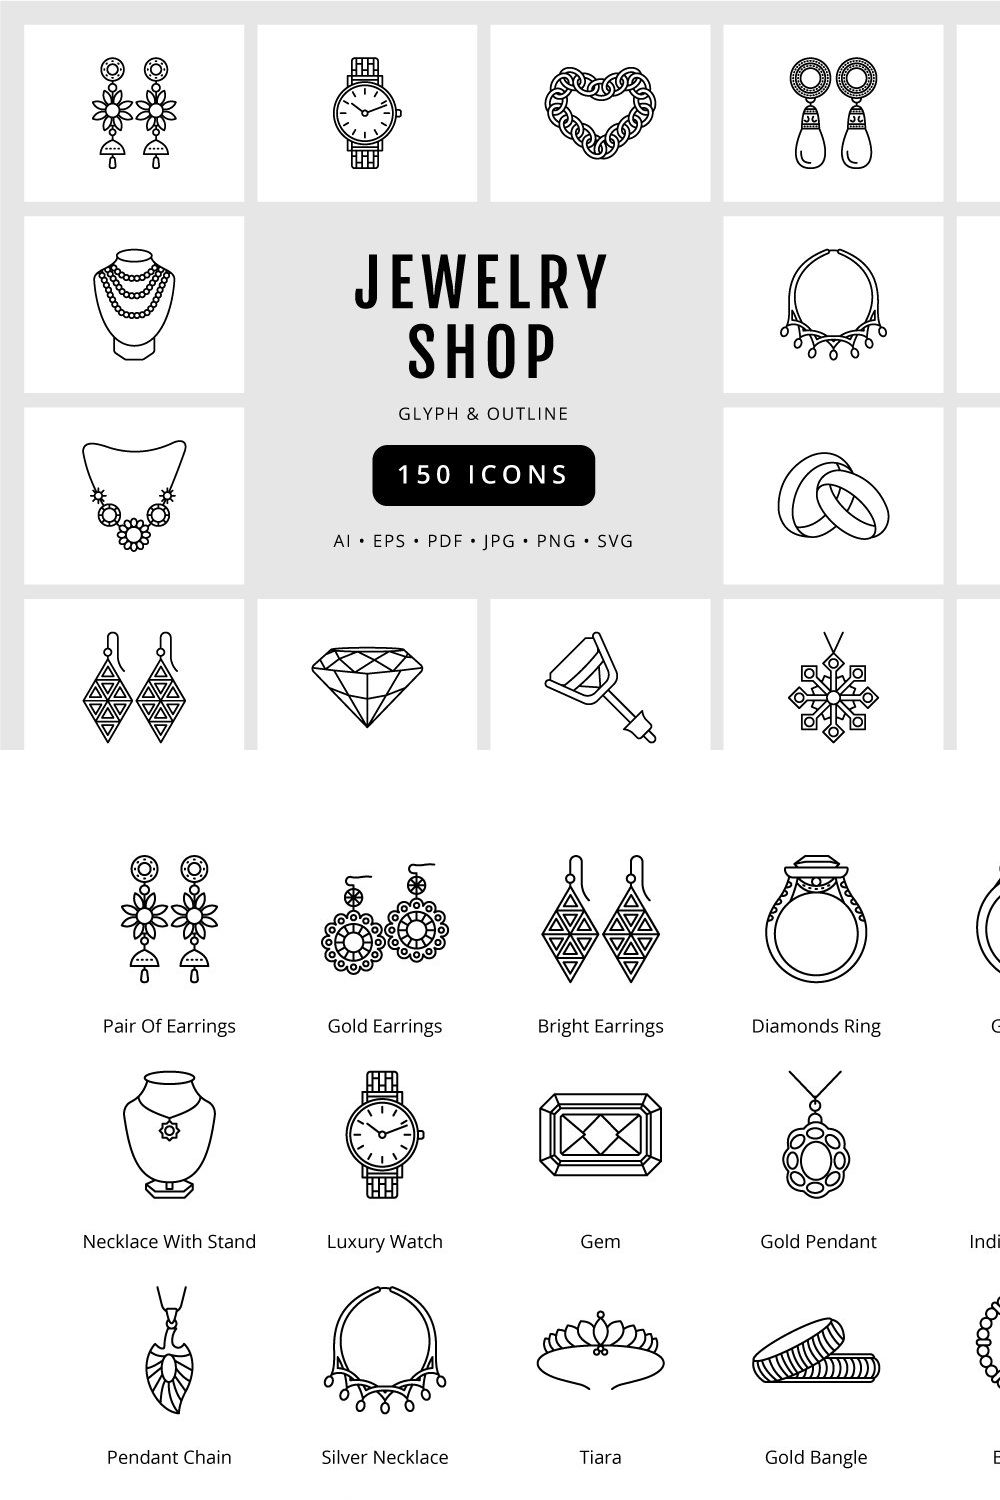 Jewelry Shop Unique 150 Icons pinterest preview image.